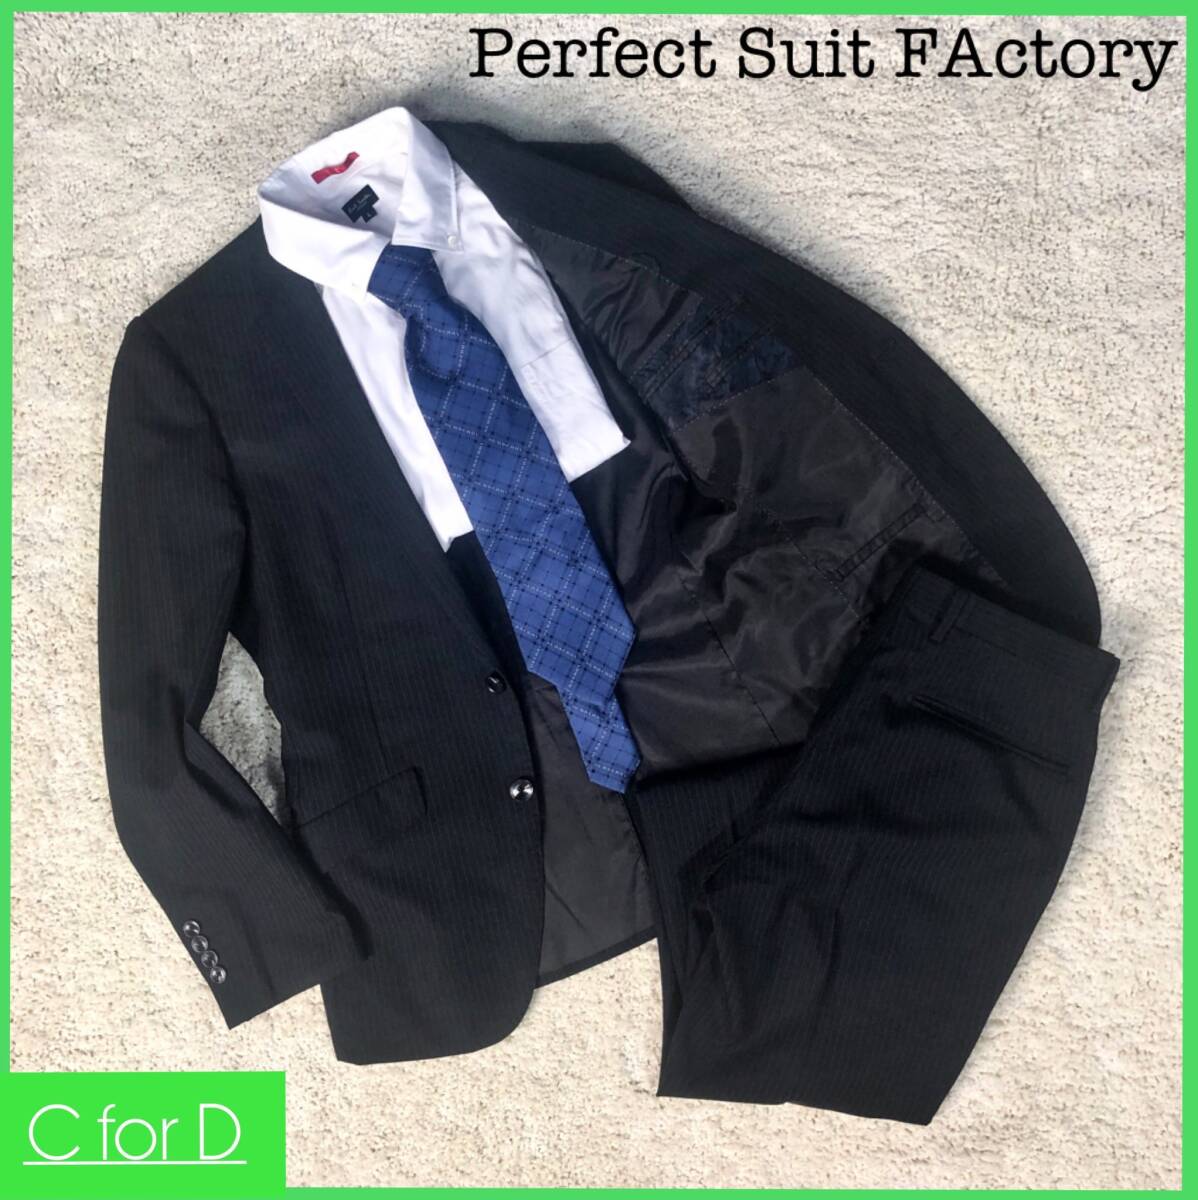 ★Perfect Suit FActory★Y5(Mサイズ相当) パーフェクトスーツファクトリー メンズ 濃紺 ネイビー セットアップスーツ  ストライプ 総裏J123